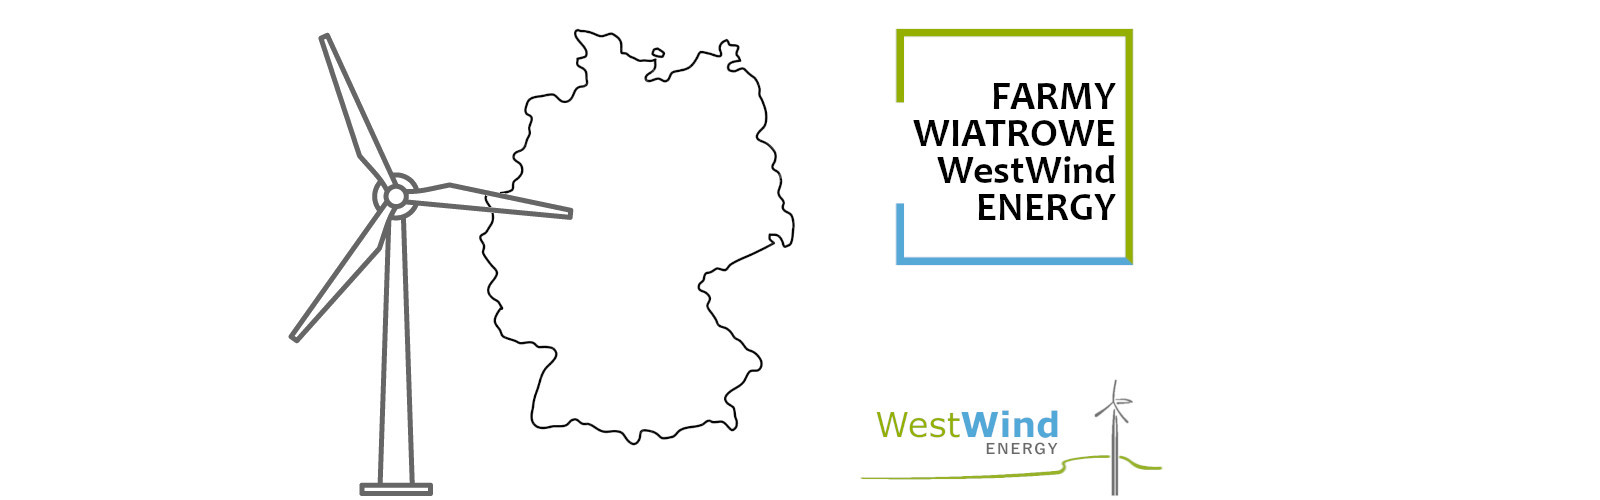 Farmy wiatrowe WestWind Energy w Niemczech